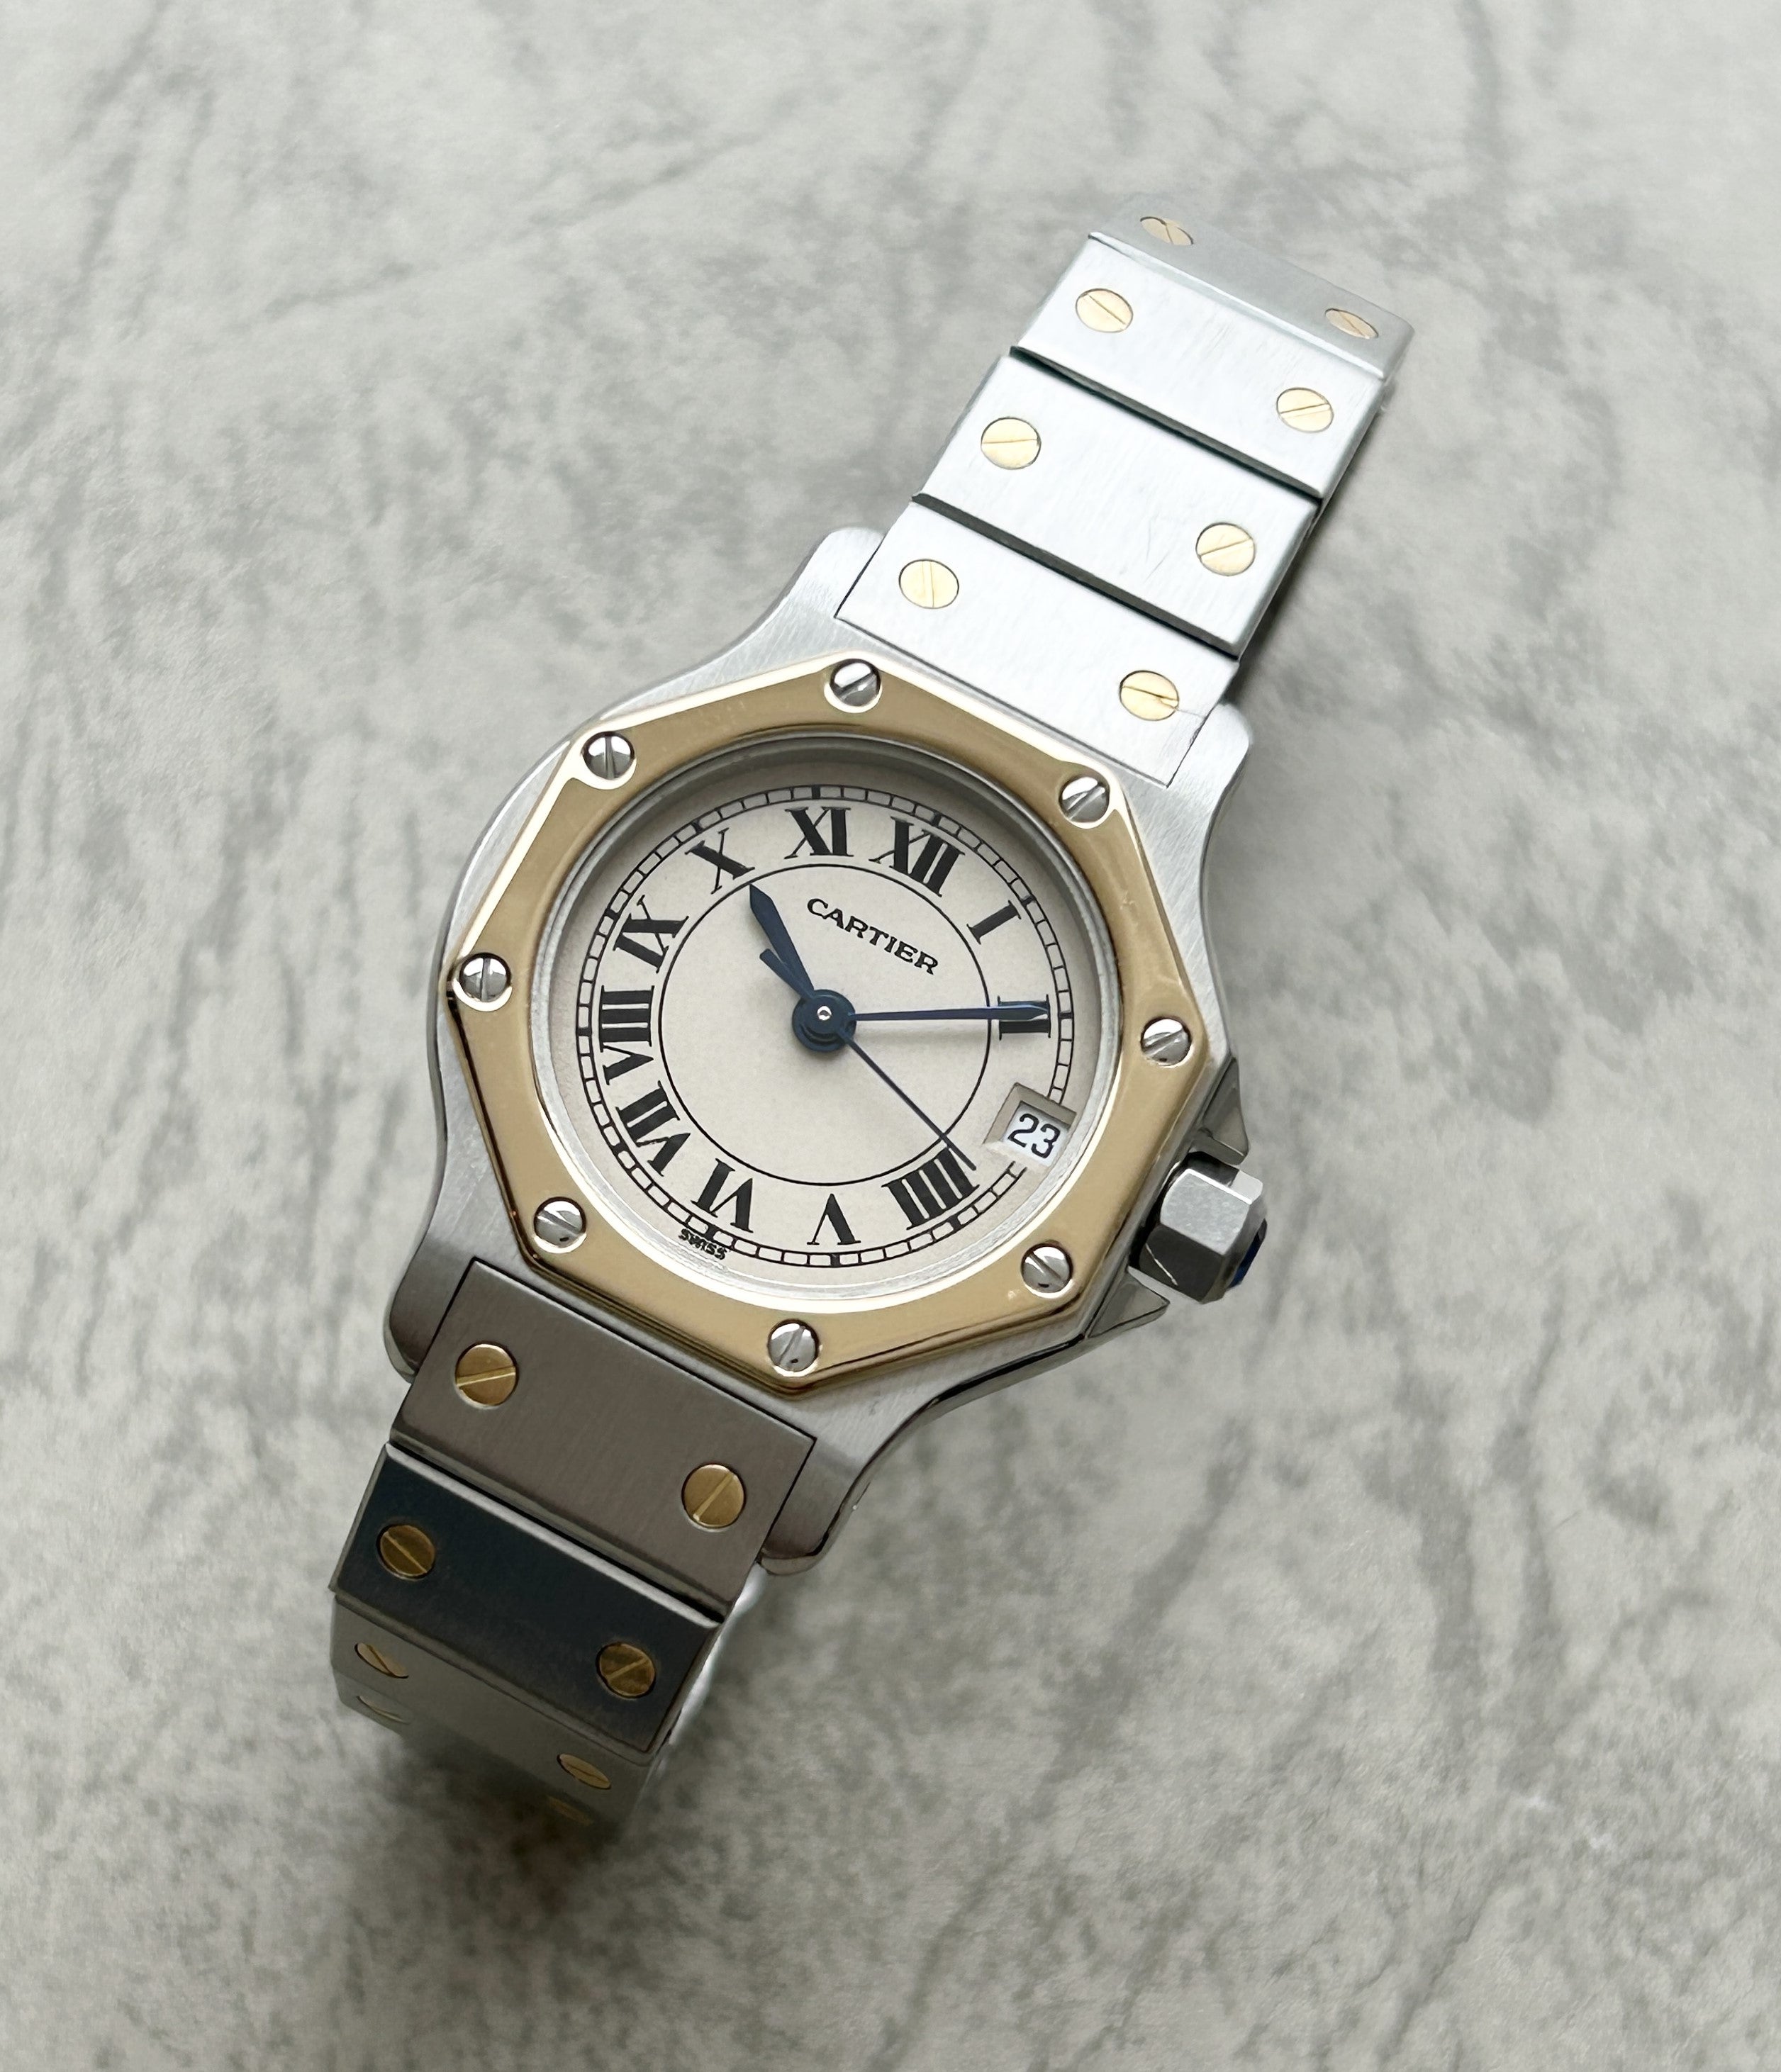 クォーツと自動巻きがラインナップされた稀有な時計。